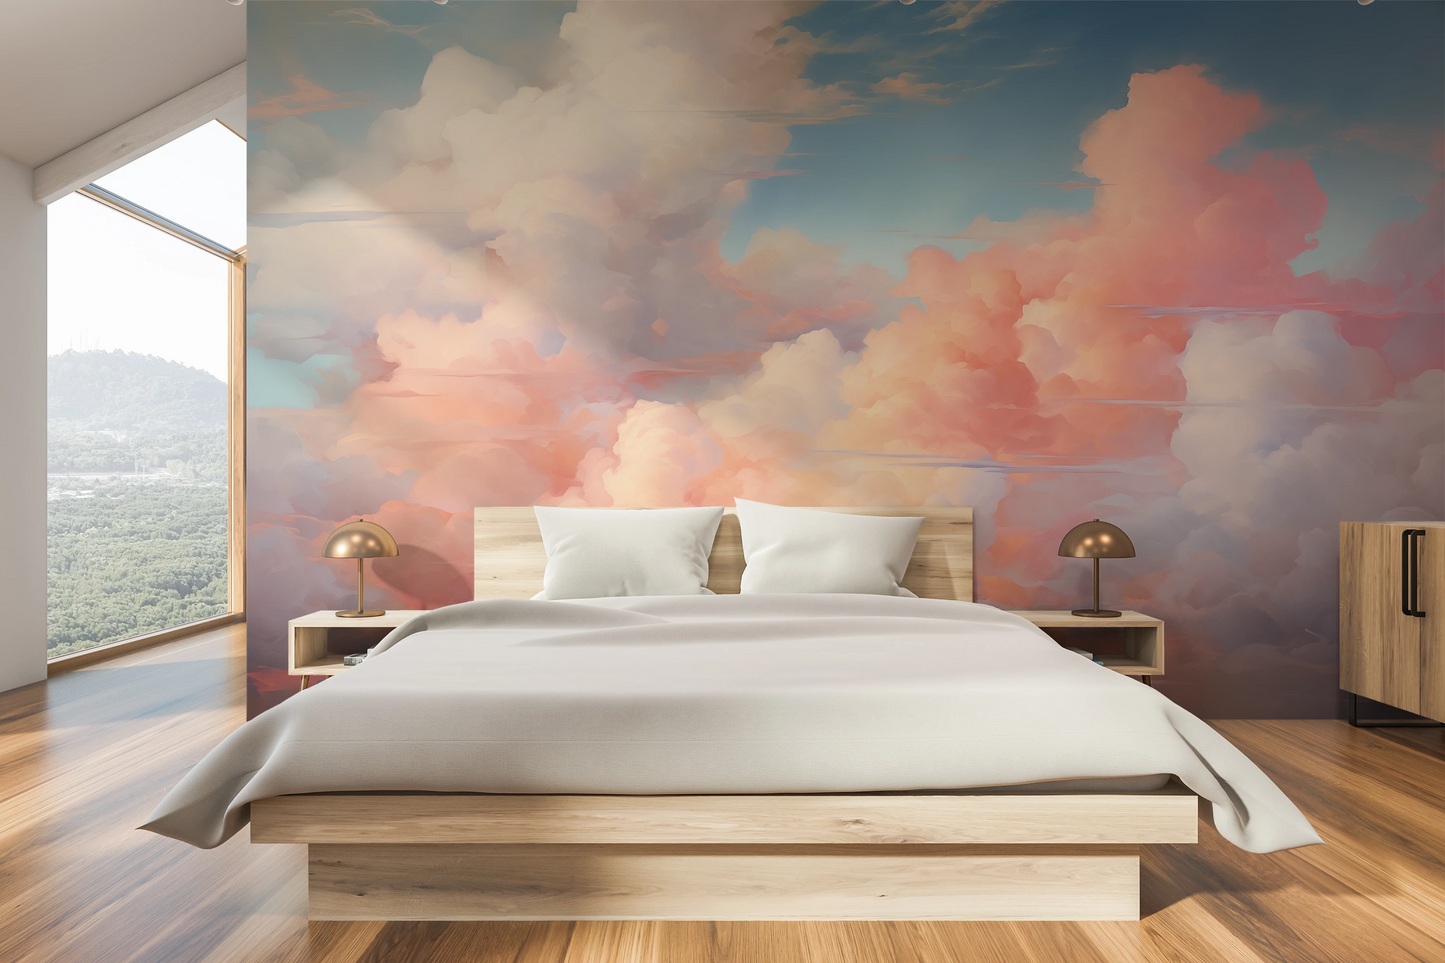 Fototapeta malowana o nazwie Blushing Skies pokazana w aranżacji wnętrza.